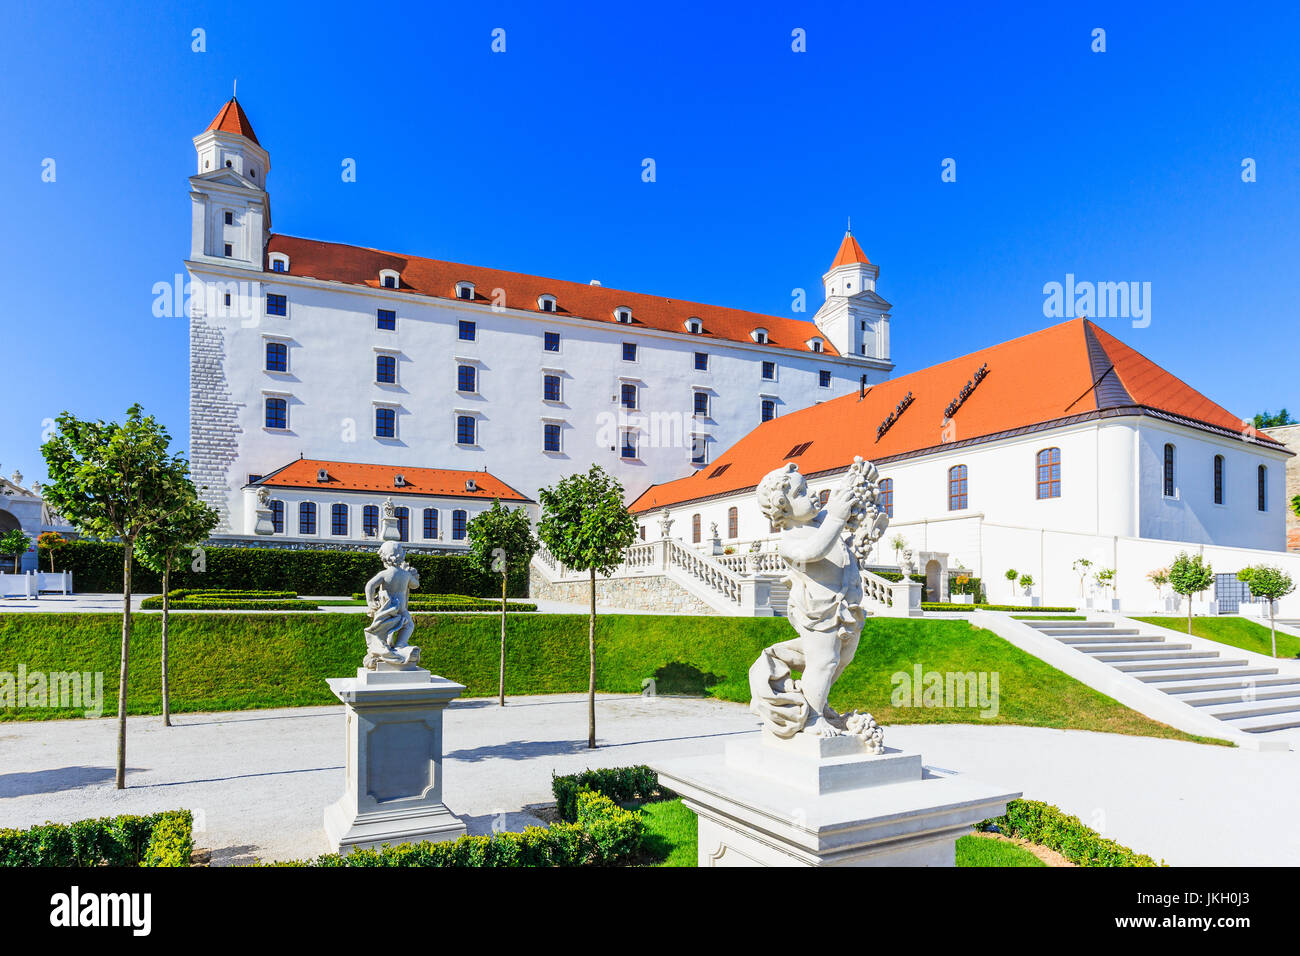 Bratislava, Slovacchia. Vista del castello di Bratislava e i suoi giardini. Foto Stock